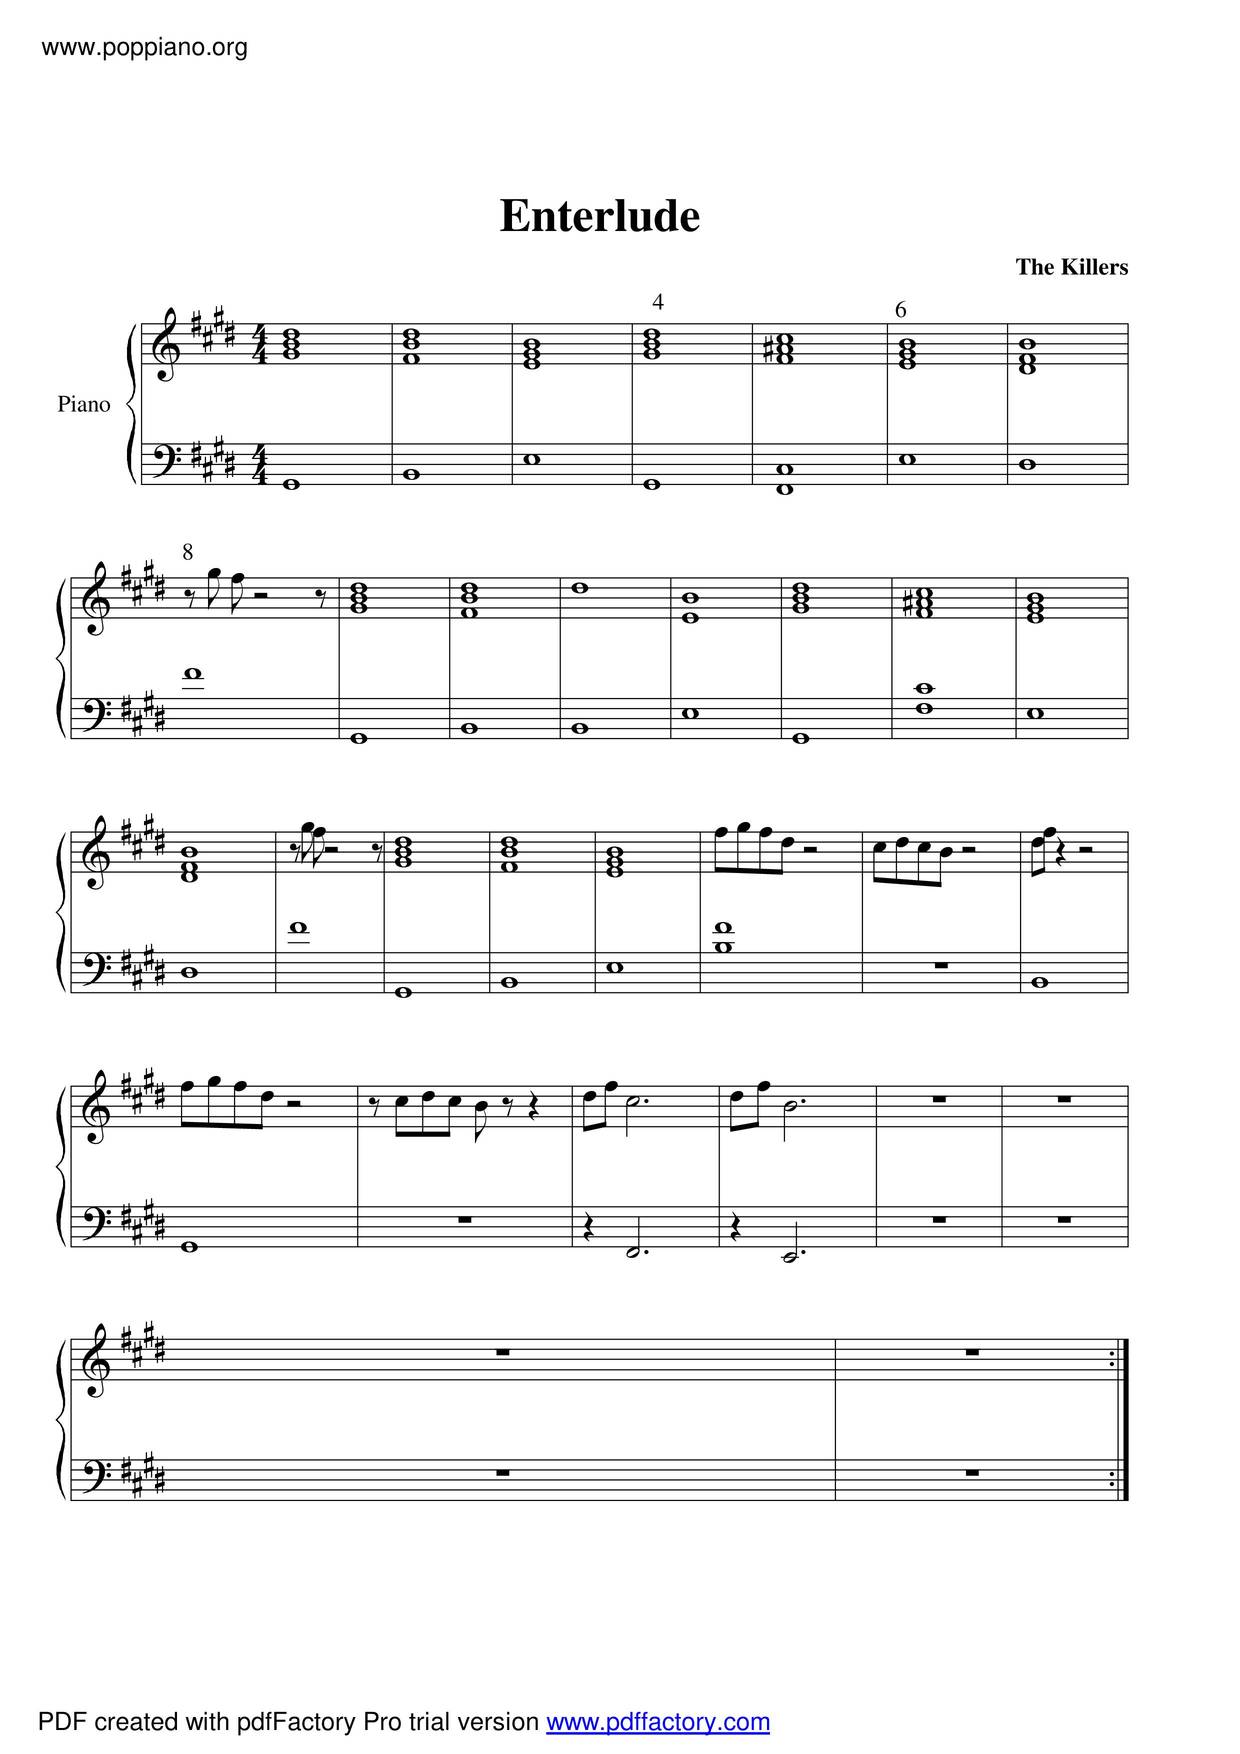 Enterlude Score